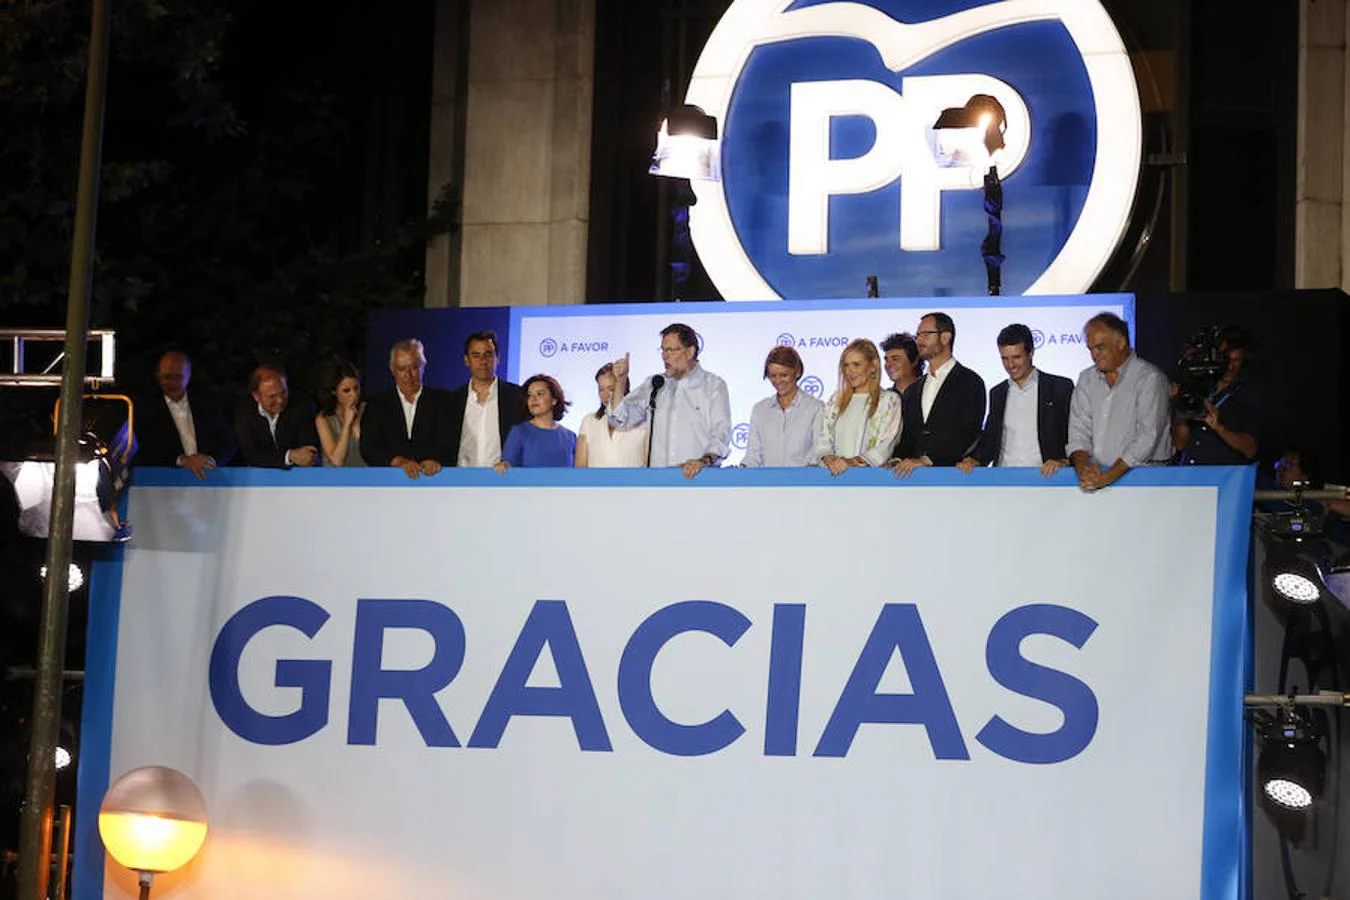 El 26 de junio de 2016 se celebran, de nuevo, las elecciones generales. El Partido Popular las gana con un 33,01% de los votos y 137 escaños. Tras la ronda de contactos con el Rey, Mariano Rajoy acepta el encargo de formar gobierno.. 